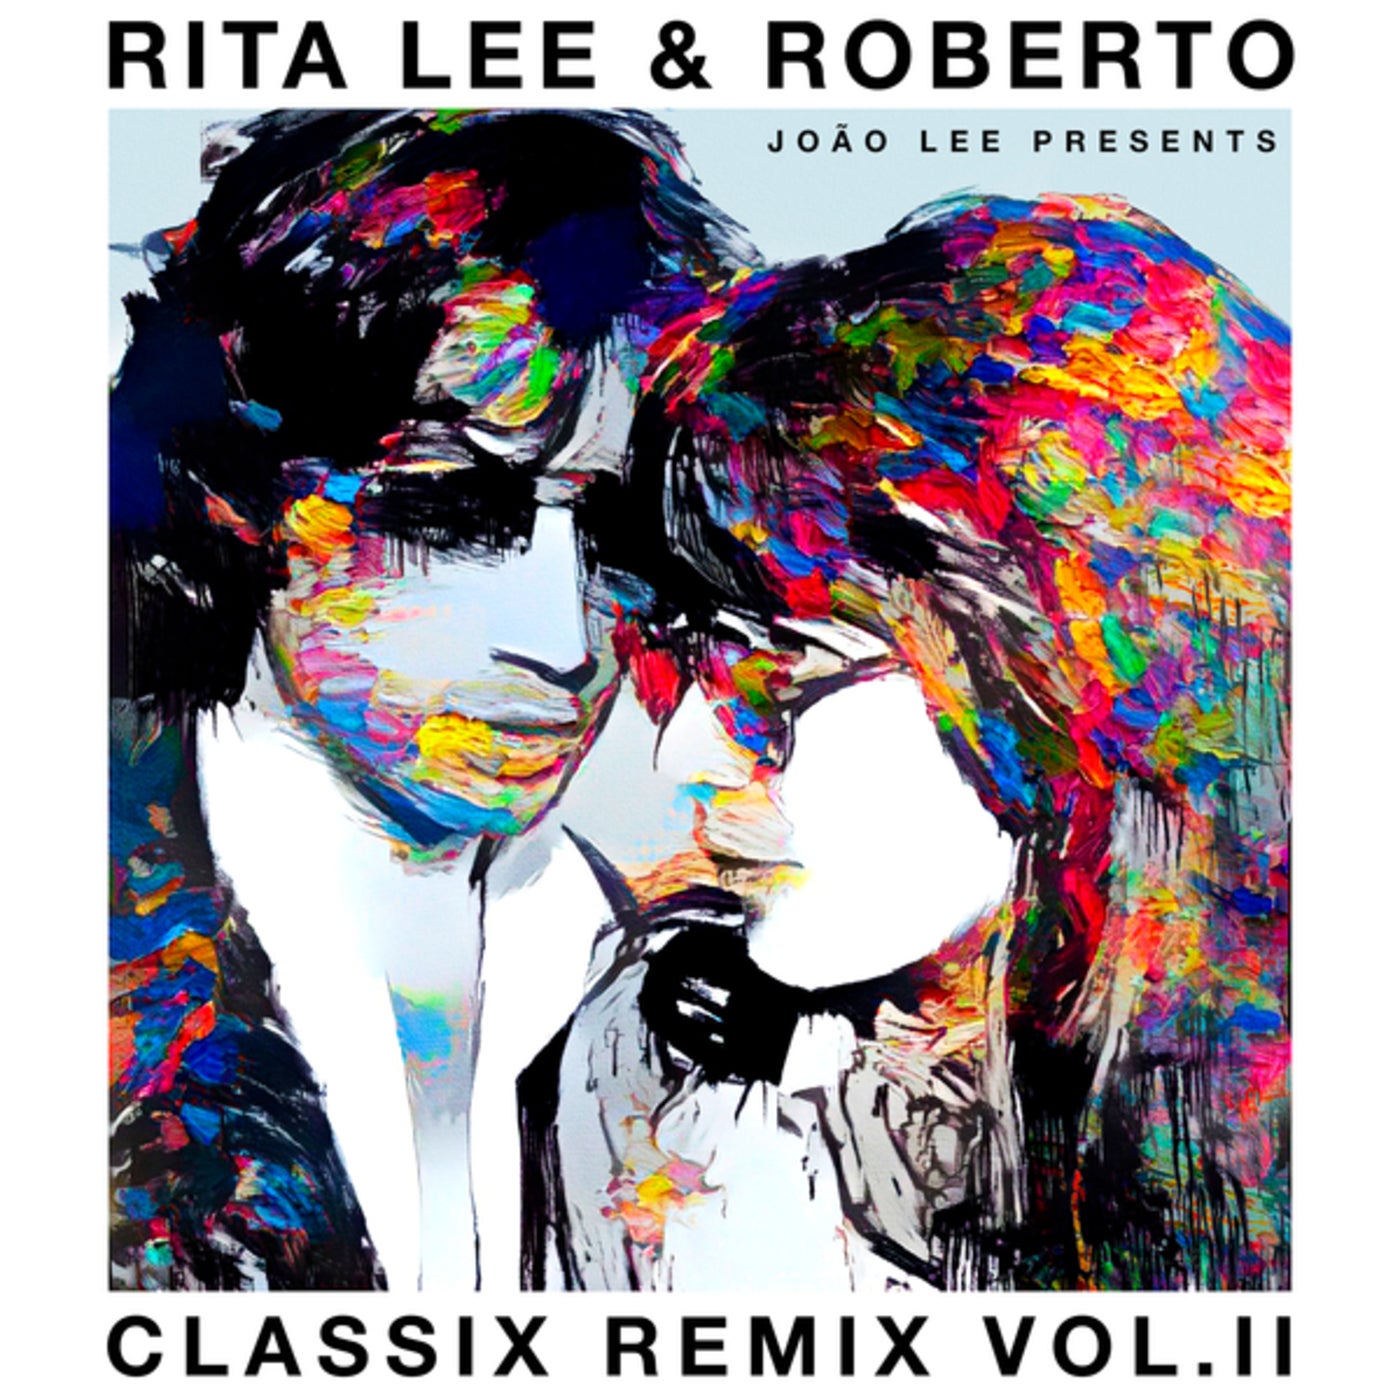 Rita Lee music download - Beatport